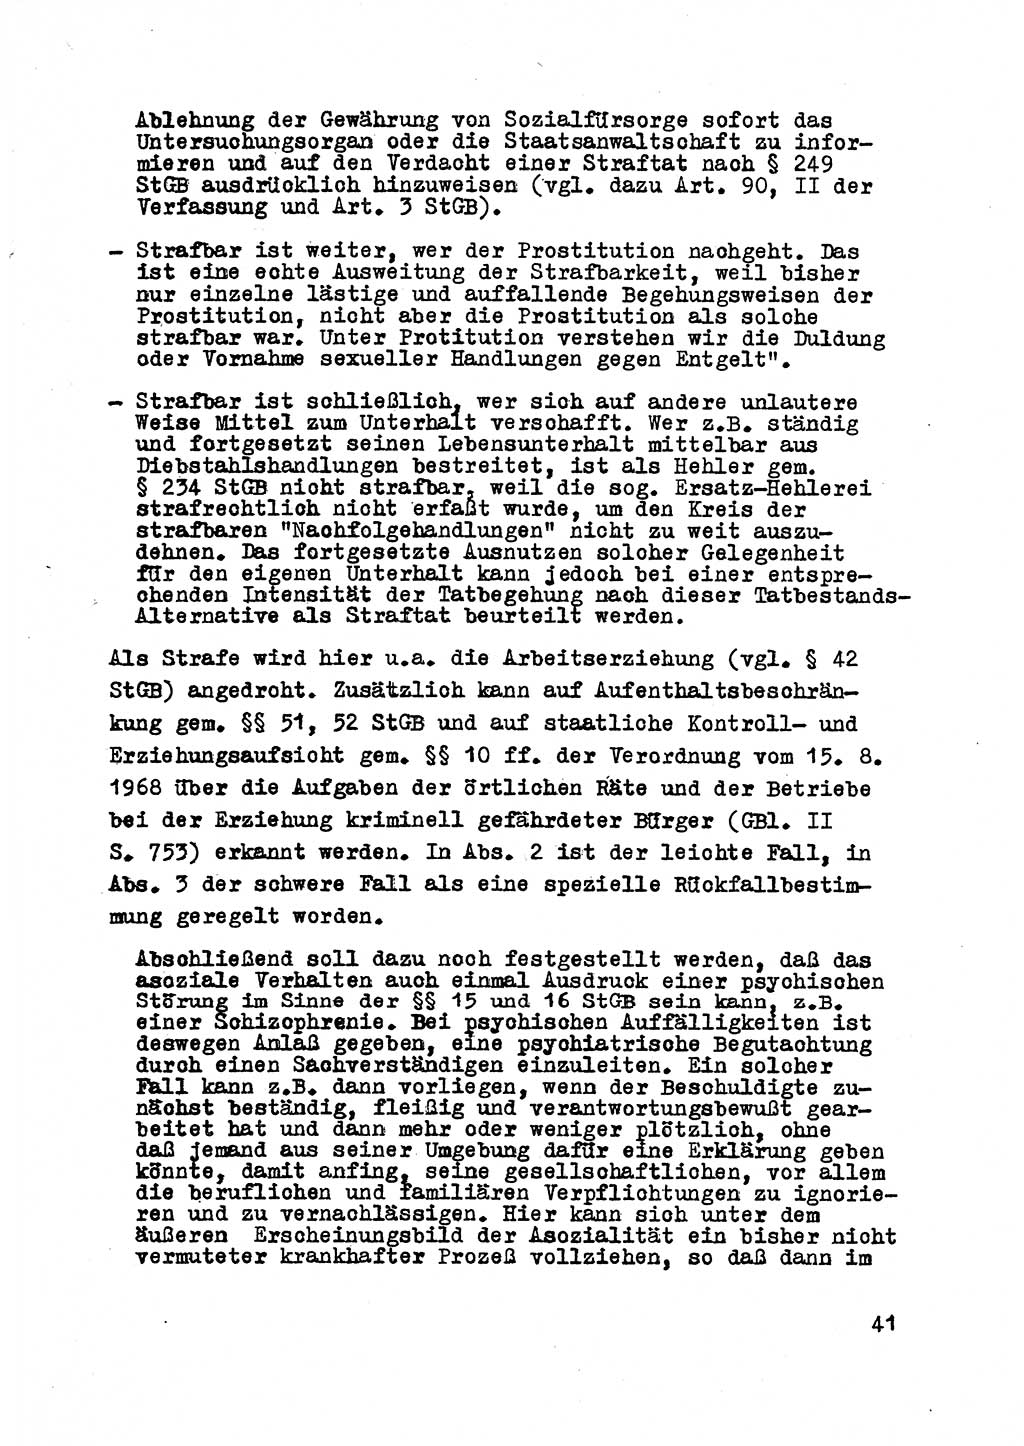 Strafrecht der DDR (Deutsche Demokratische Republik), Besonderer Teil, Lehrmaterial, Heft 8 1970, Seite 41 (Strafr. DDR BT Lehrmat. H. 8 1970, S. 41)